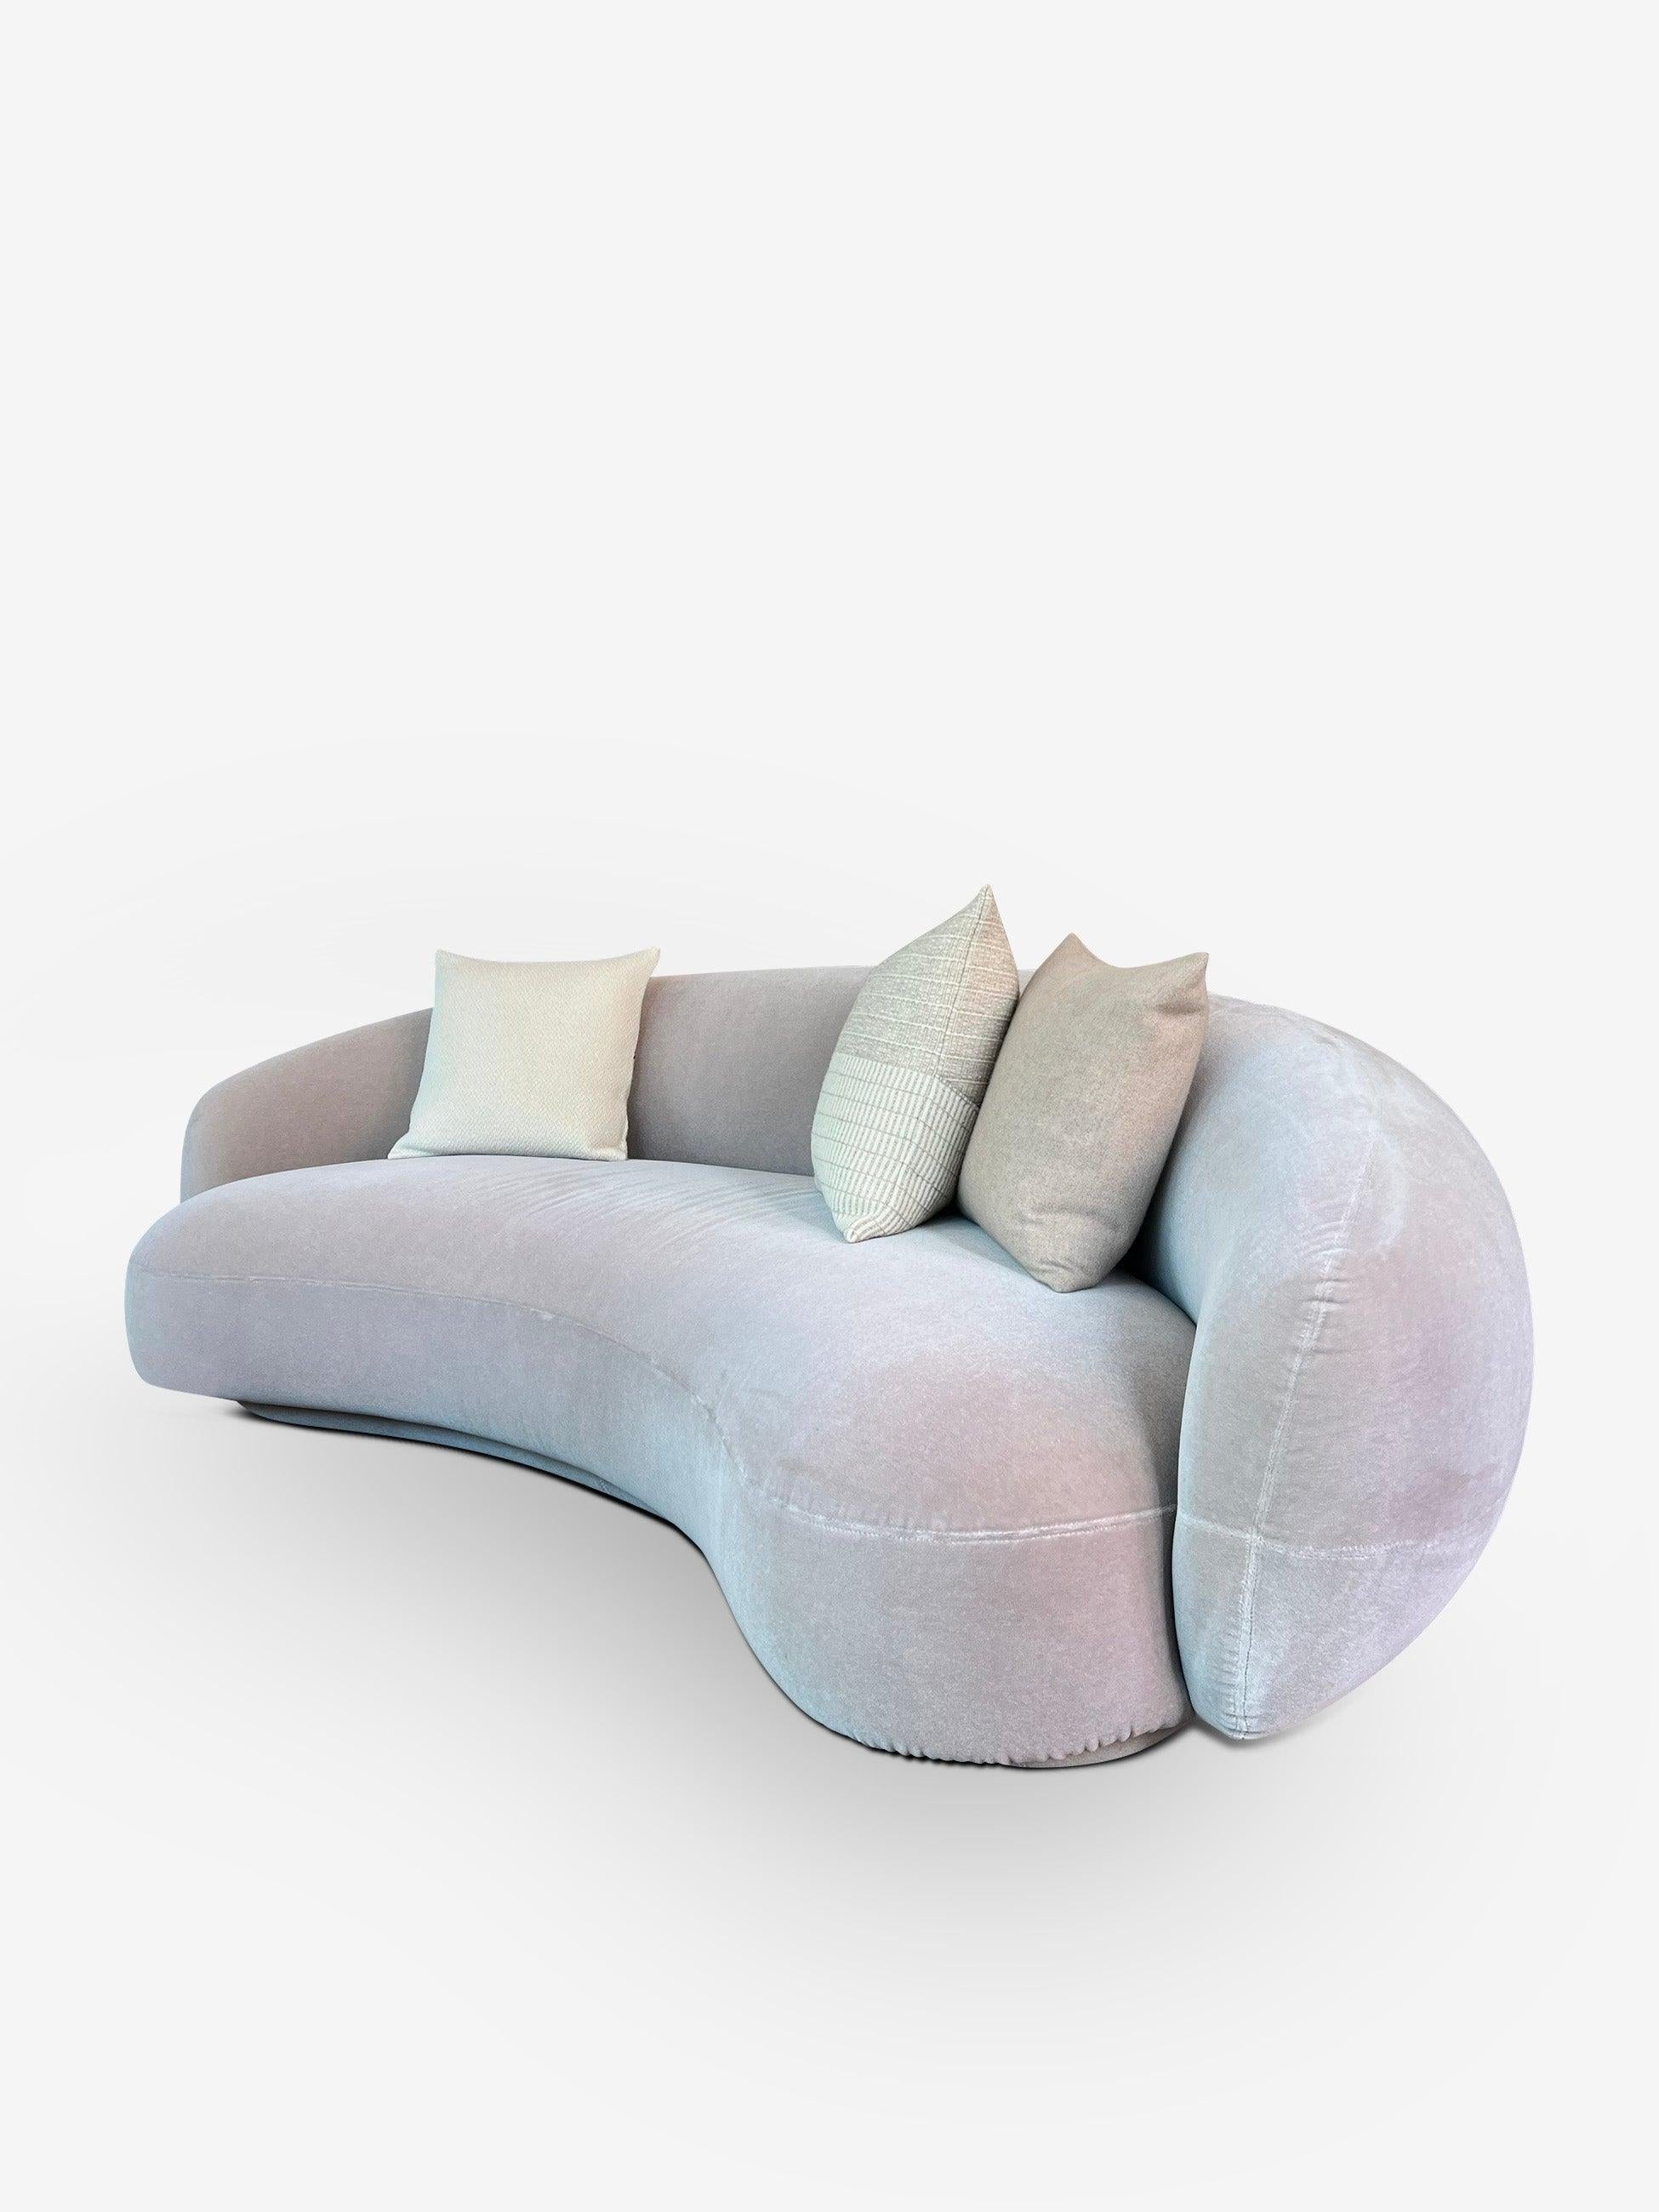 Contemporary Julep Sofa in Vladimiro Corda by Tacchini For Sale